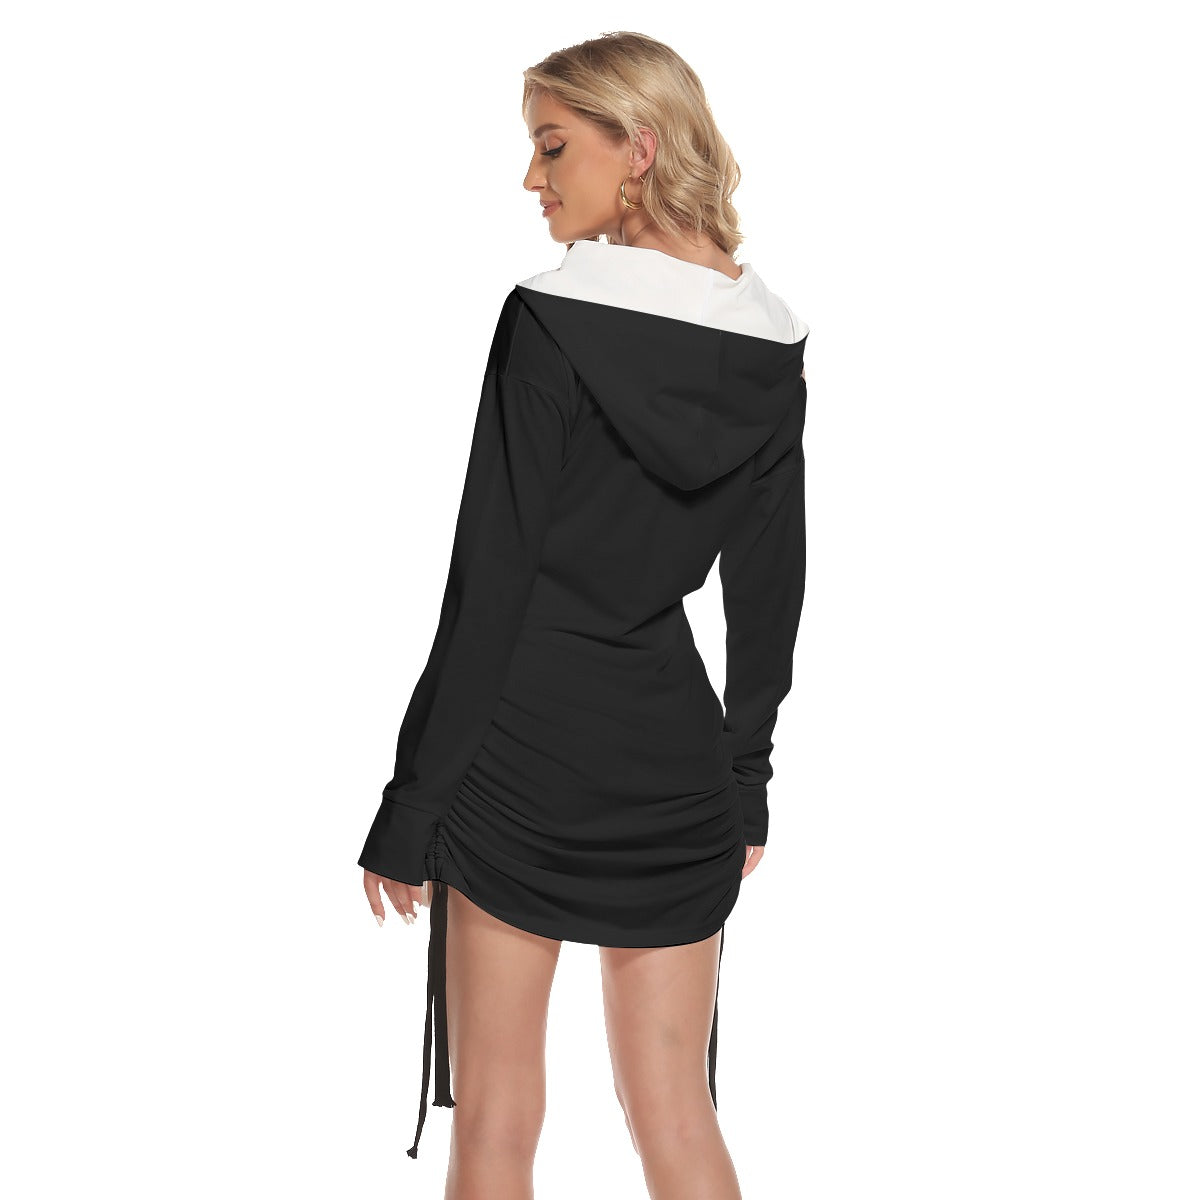 3cl3ctix Graphic Design One-shoulder Dress